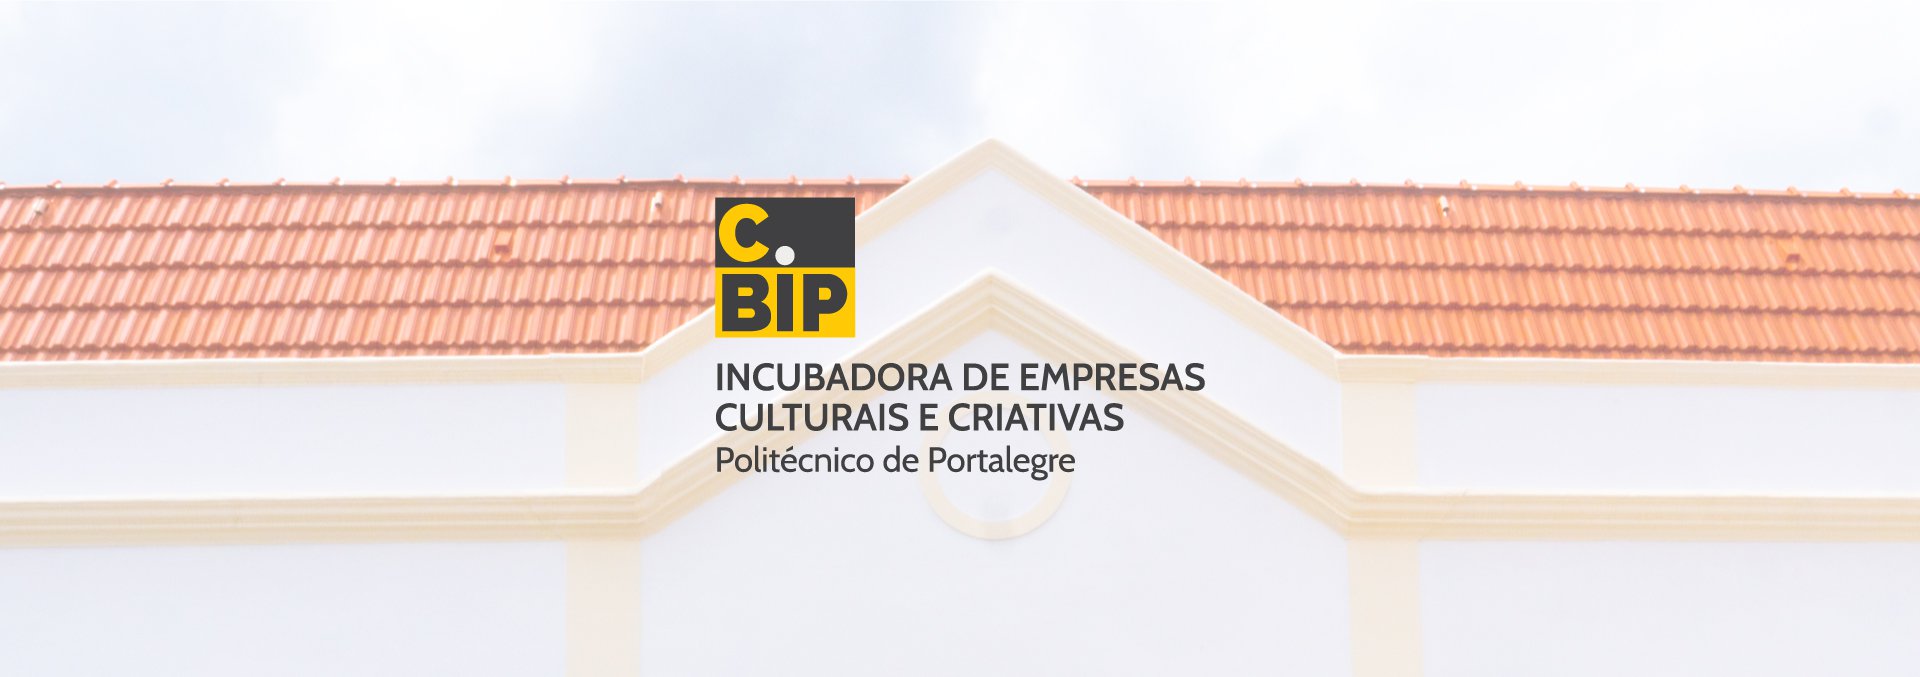 A nova casa dos criativos no centro da cidade, , C.BIP – Incubadora de Empresas Culturais e Criativas do Politécnico de Portalegre